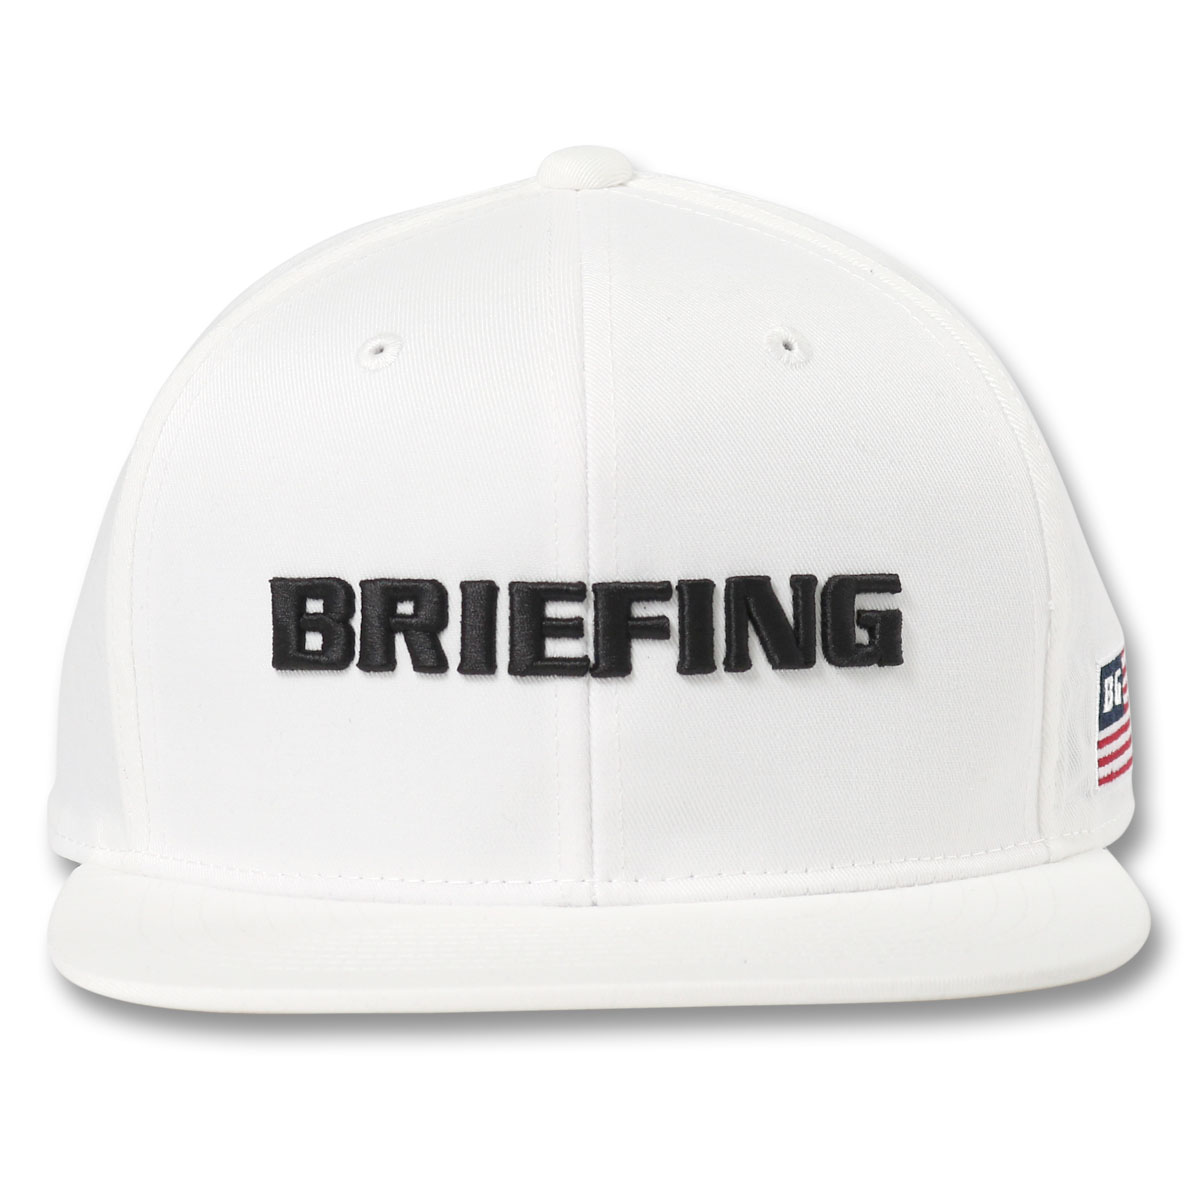 ブリーフィング ゴルフ キャップ 帽子 サイズ調節可能 メンズ BRG223M60 BRIEFING...